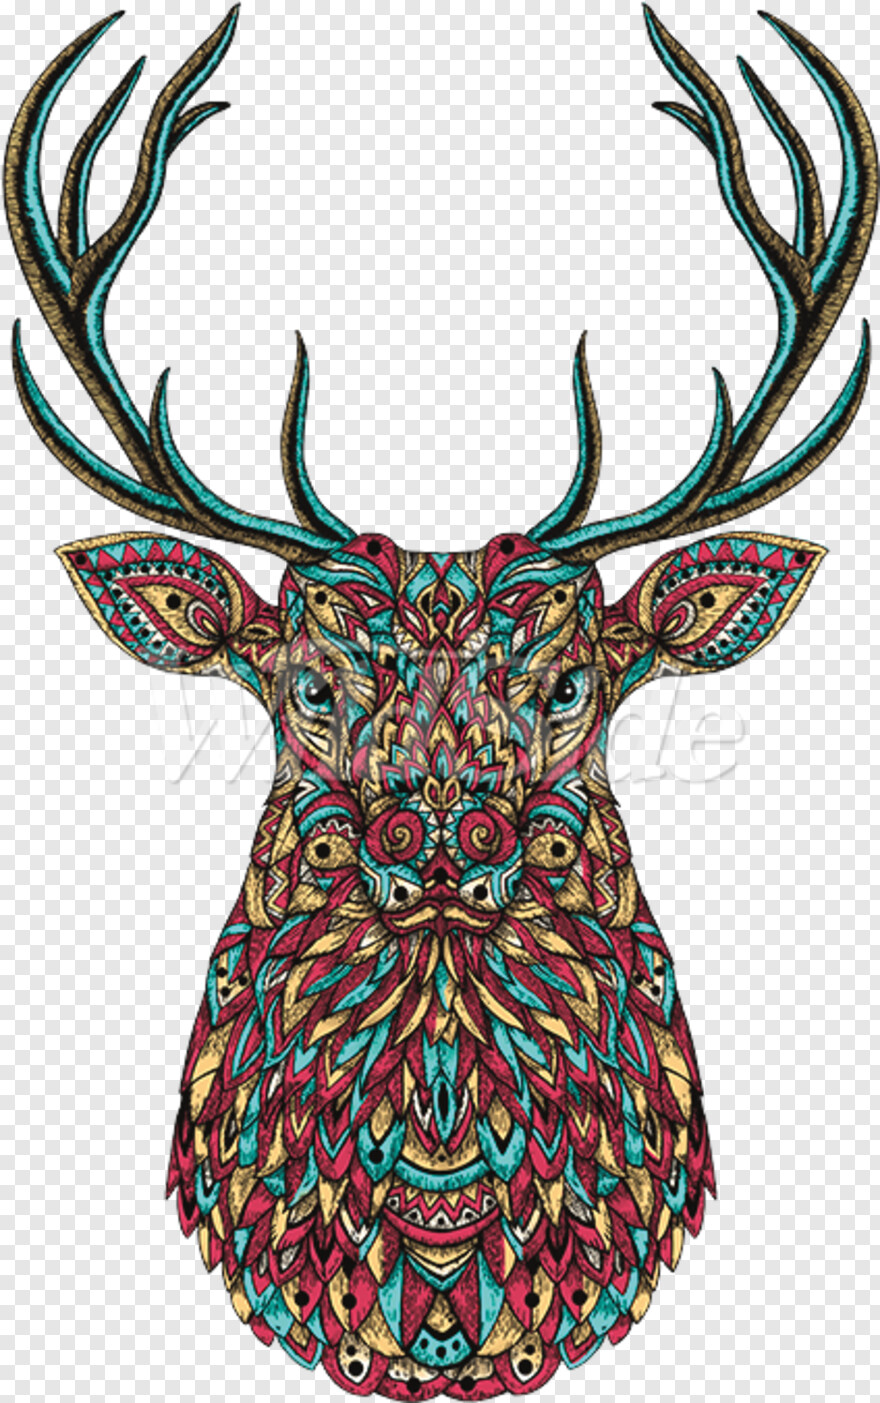 deer-head # 918762